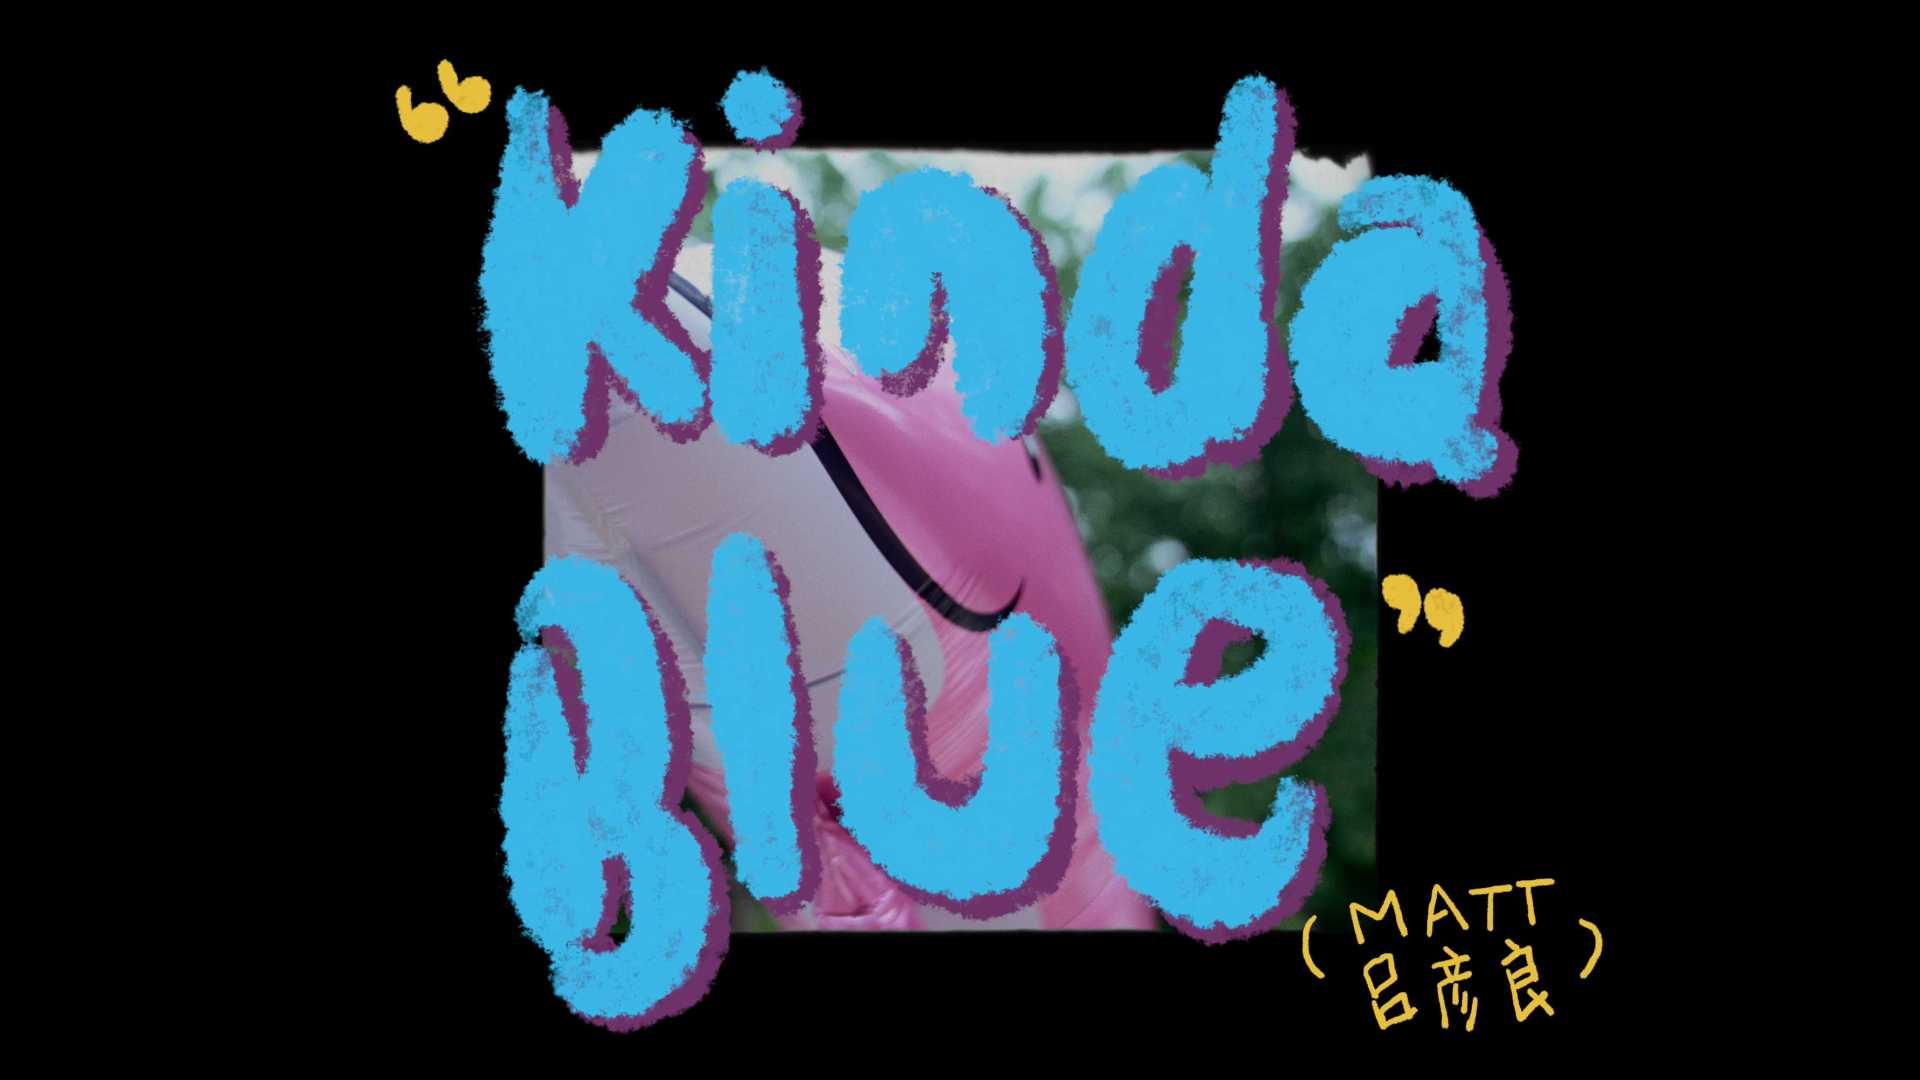 Matt吕彦良《Kinda Blue》Official Music Video